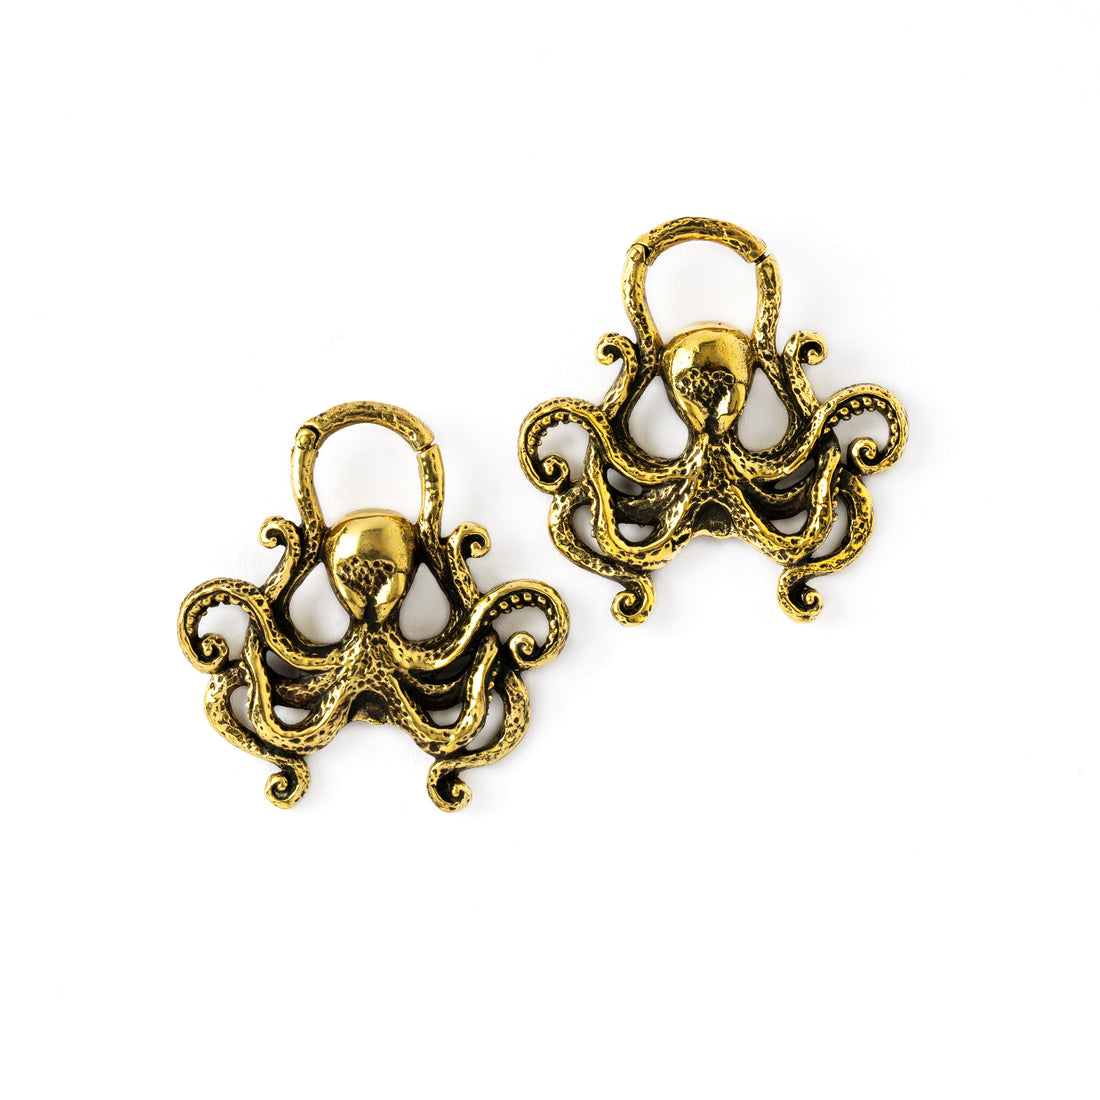 pair of golden brass octopus ear weight hoops frontal view